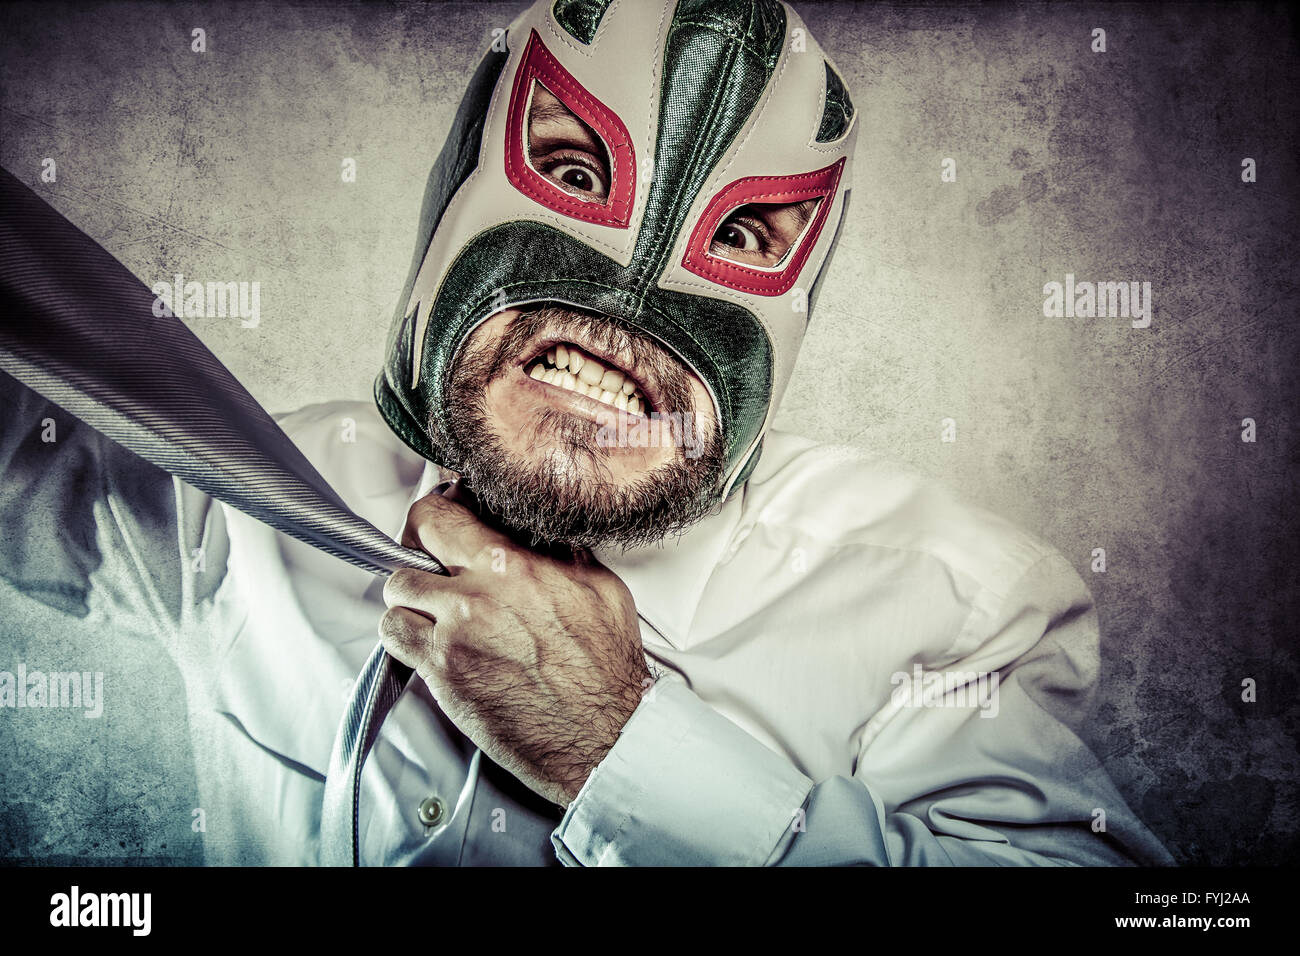 Difficulté, agressif de la costume, cravate, masque de catcheur mexicain  Photo Stock - Alamy